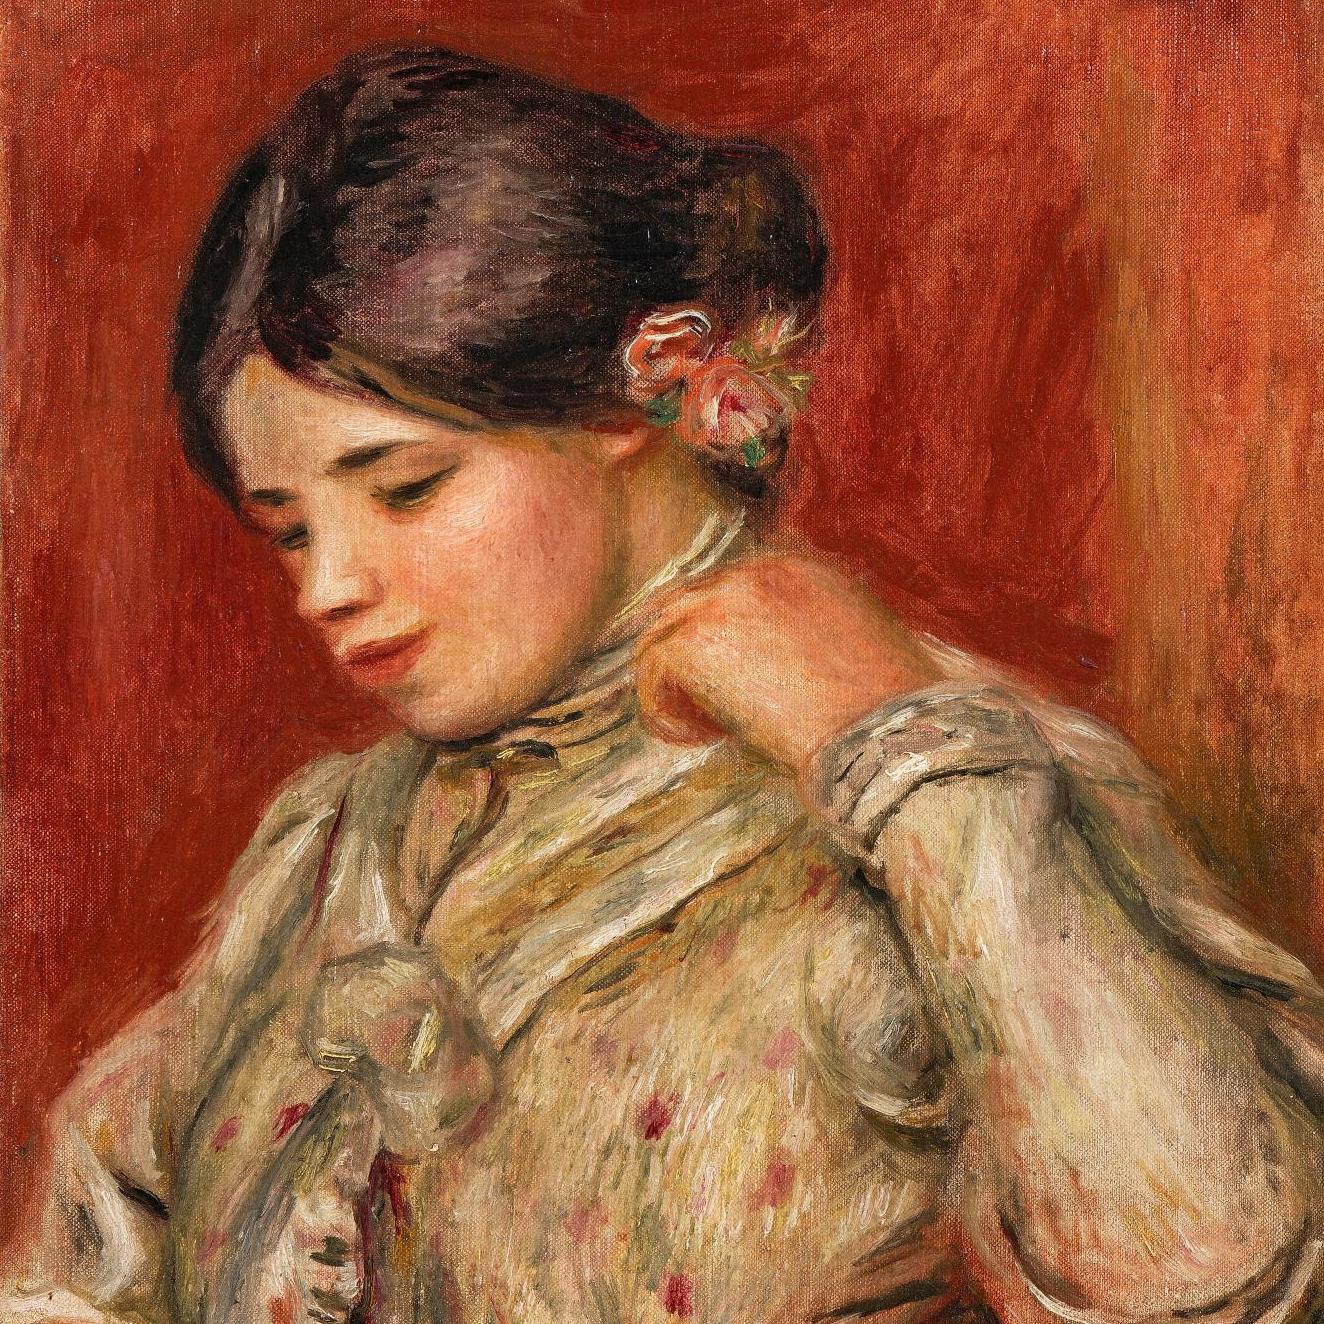 Une jeune femme de Renoir en plein soleil - Zoom